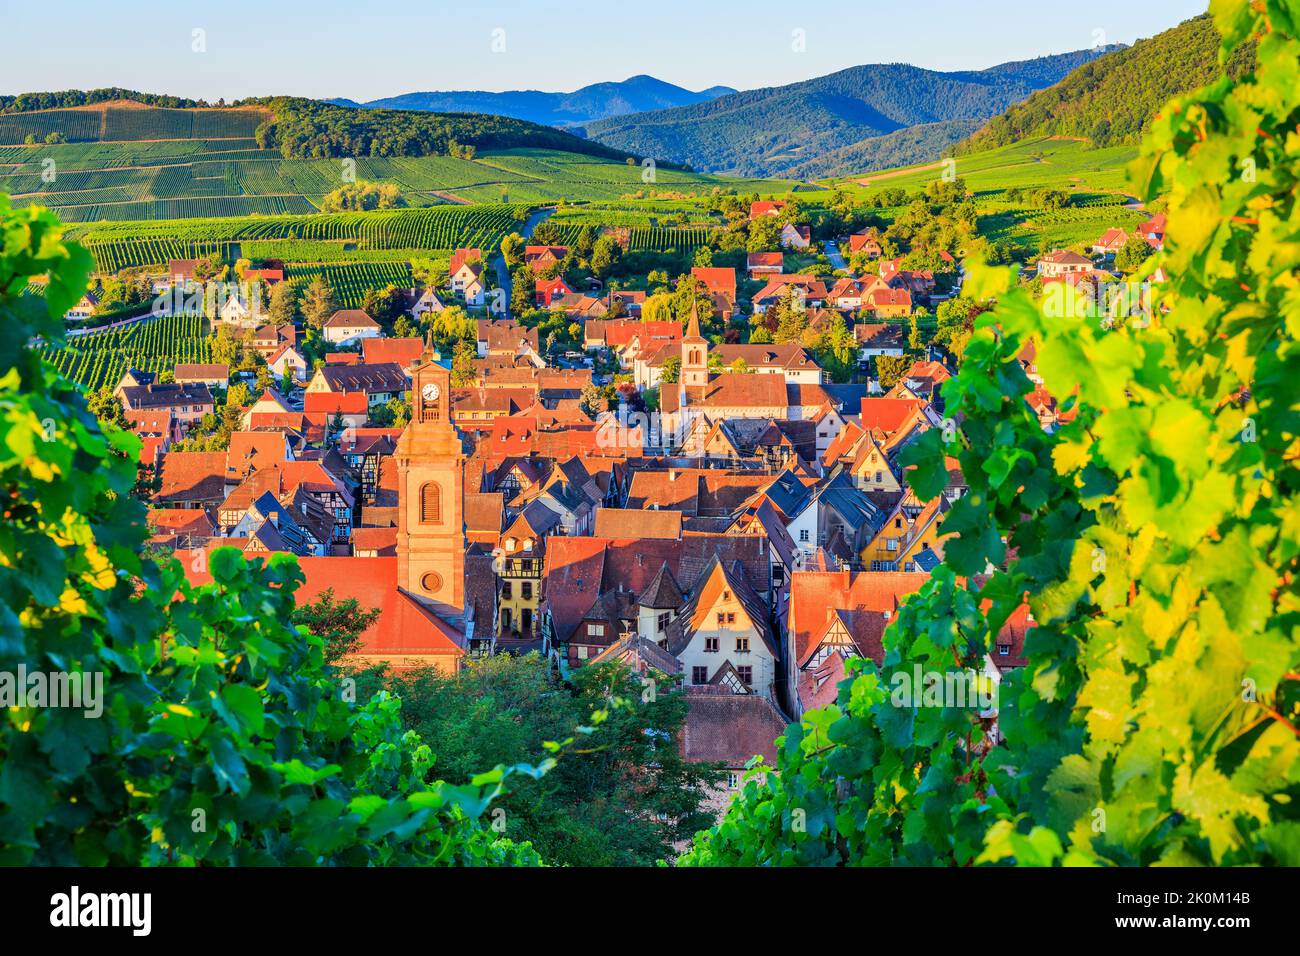 Riquewihr, Francia. Paisaje con viñedos cerca del pueblo histórico. La ruta del vino de Alsacia. Foto de stock